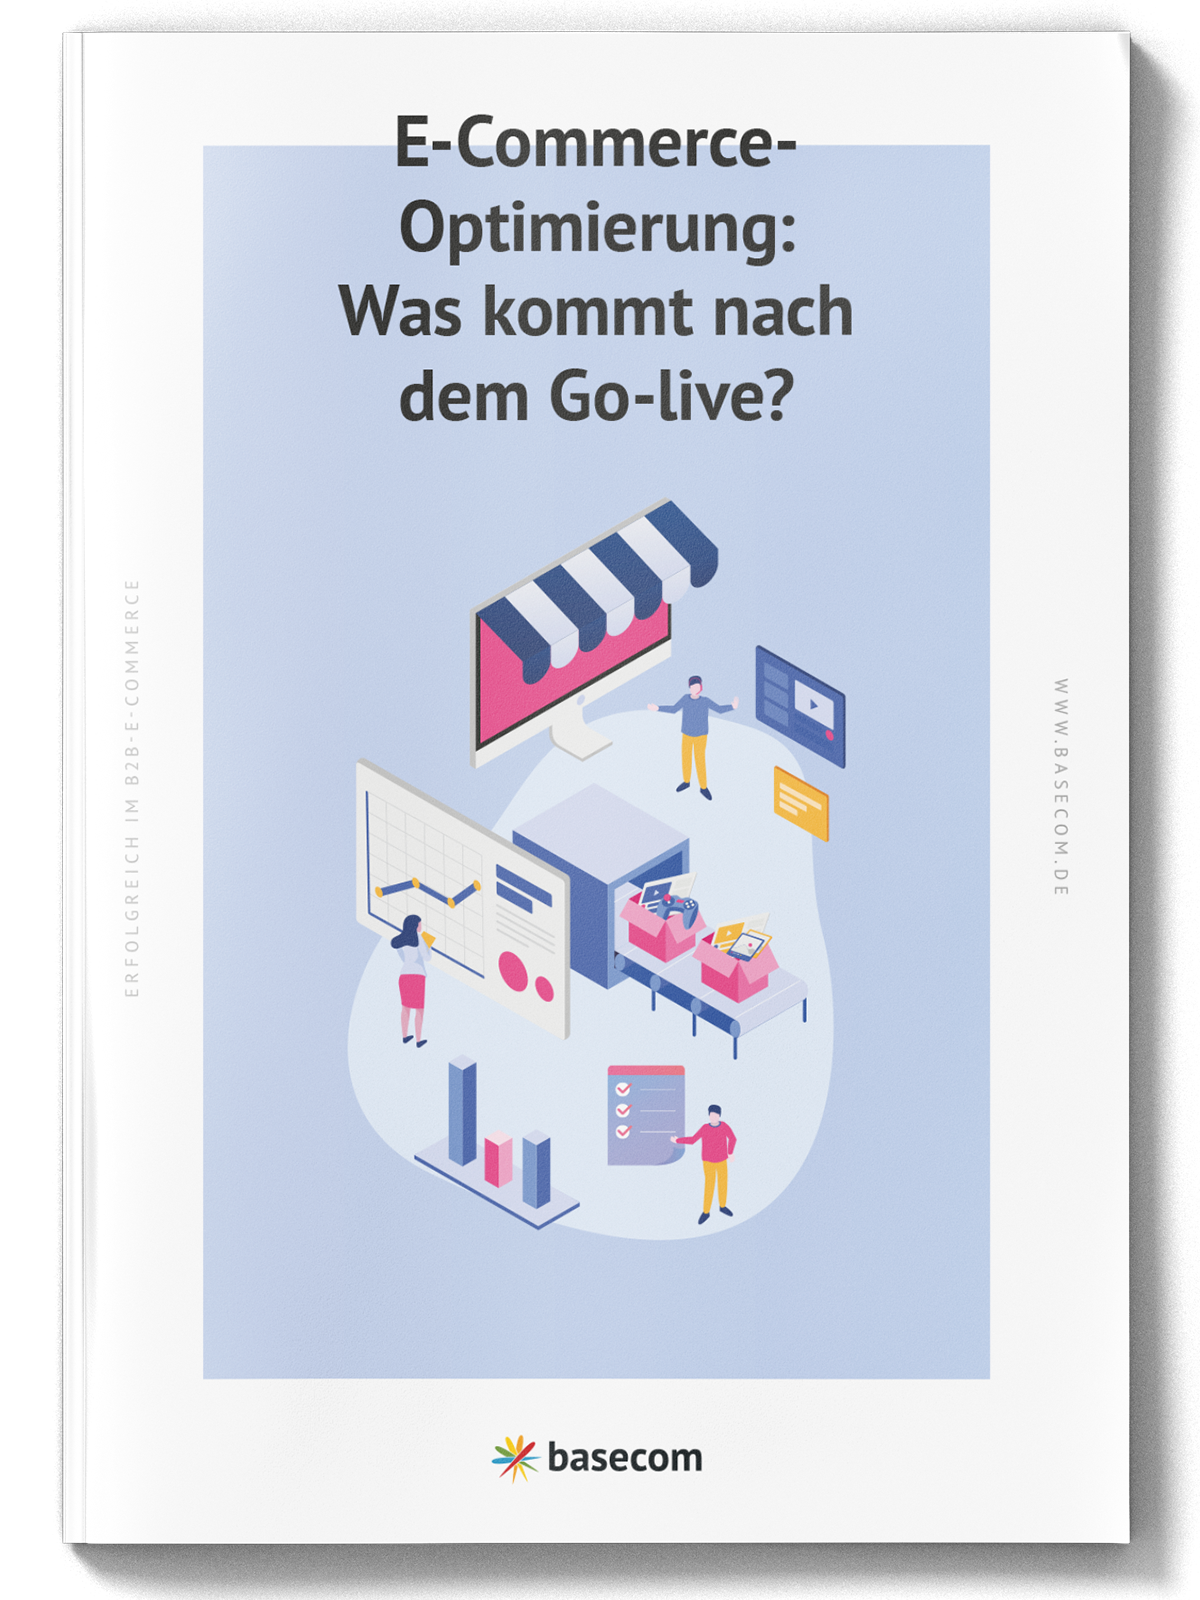 E-Commerce-Optimierung: Was kommt nach dem Go-live?